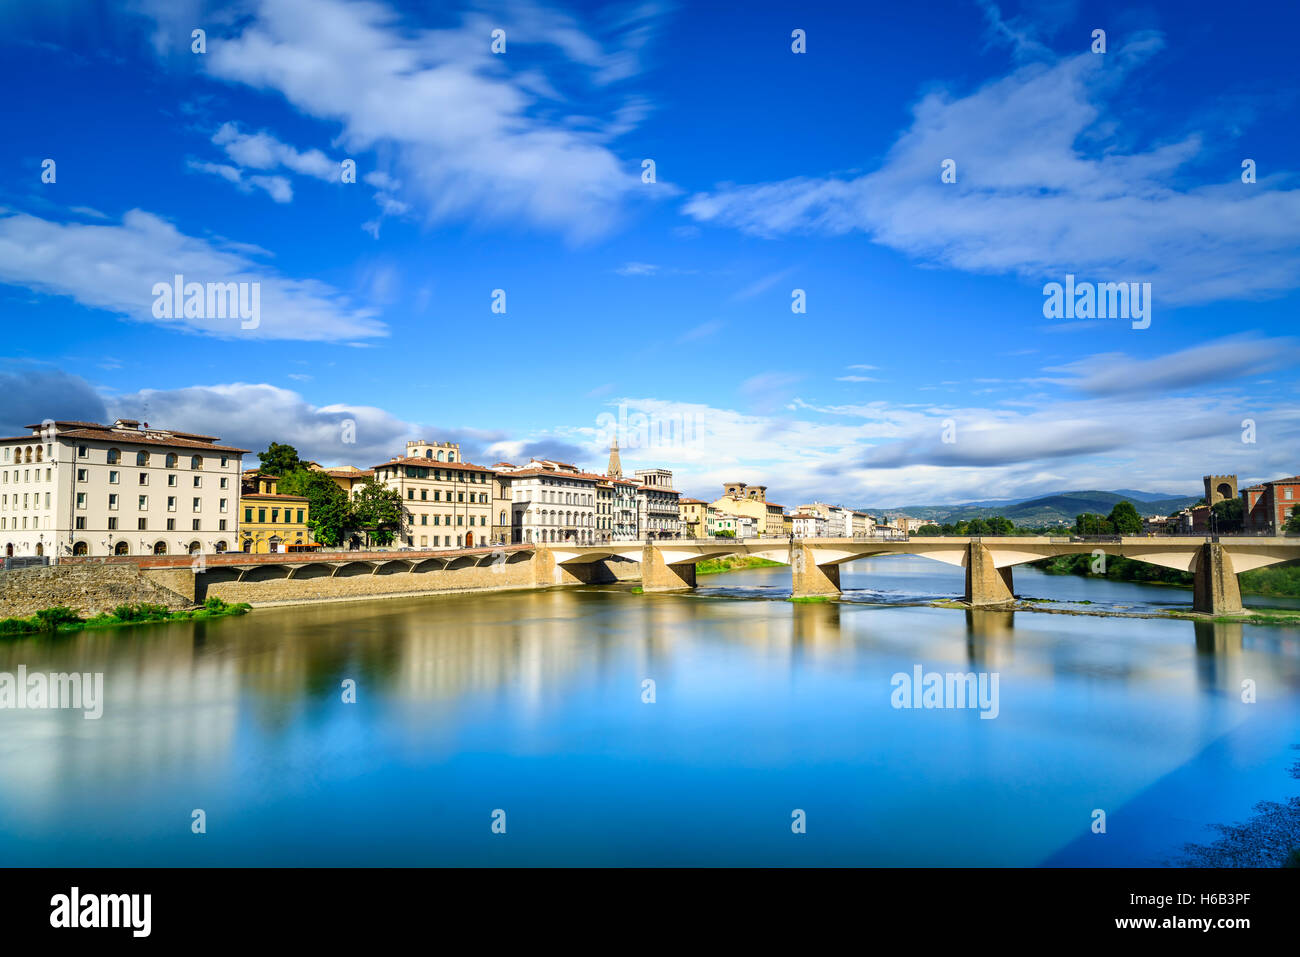 Florenz oder Firenze, Ponte Alle Grazie Brücke Wahrzeichen am Fluss Arno, Sonnenuntergang Landschaft mit Reflexion. Toskana, Italien. Lange exp Stockfoto